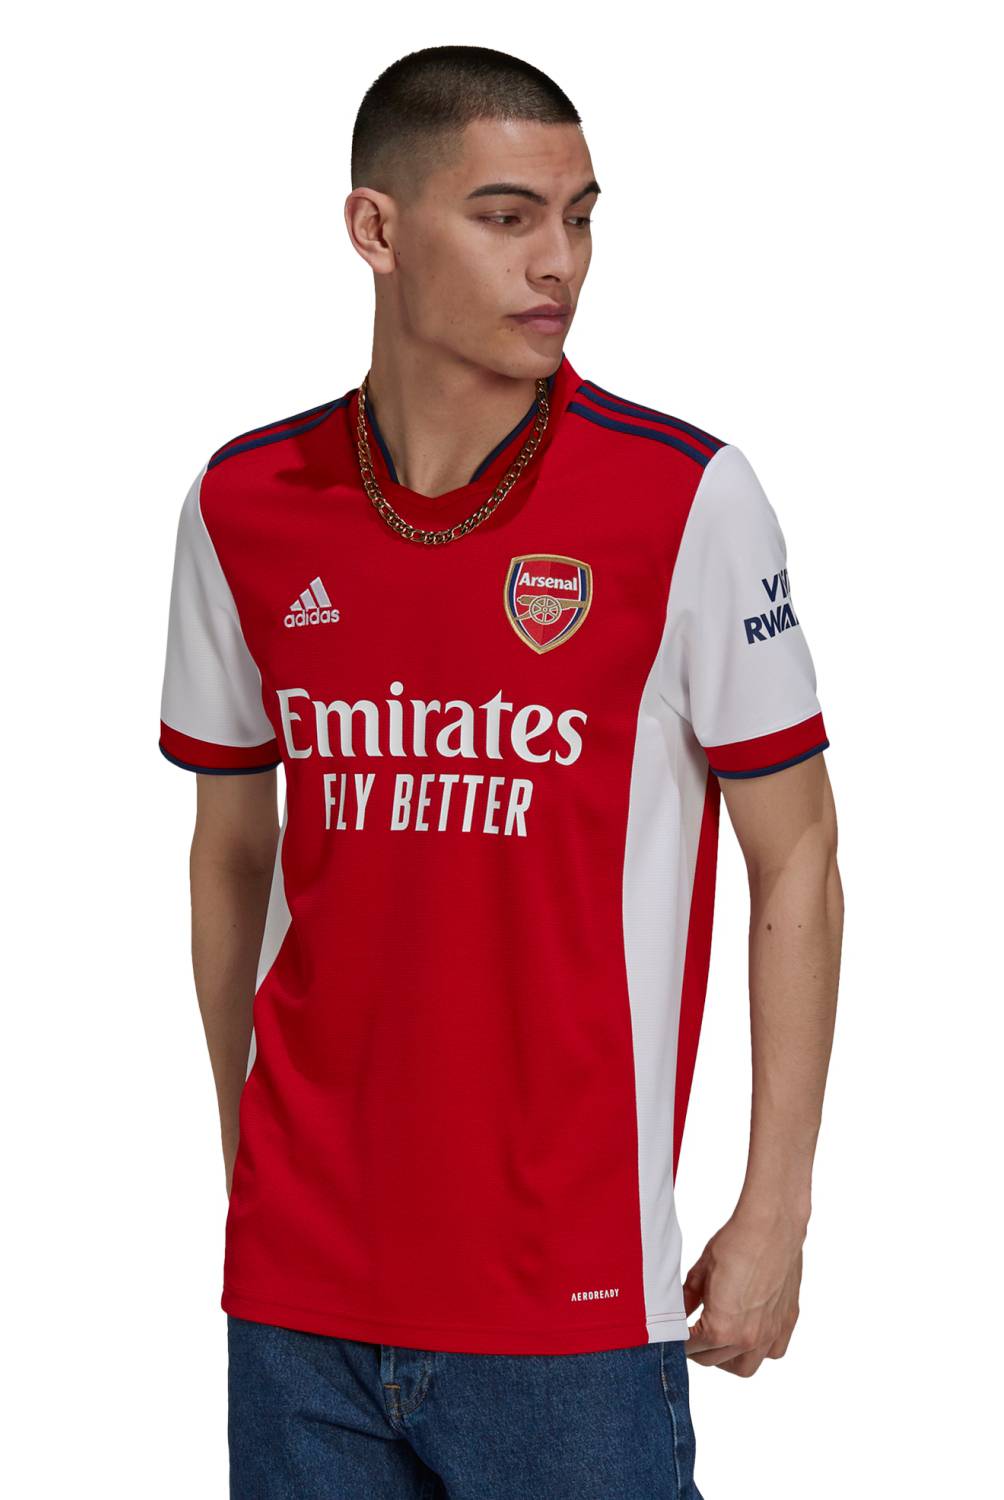 Adidas - Adidas Camiseta de Fútbol Arsenal Local Hombre